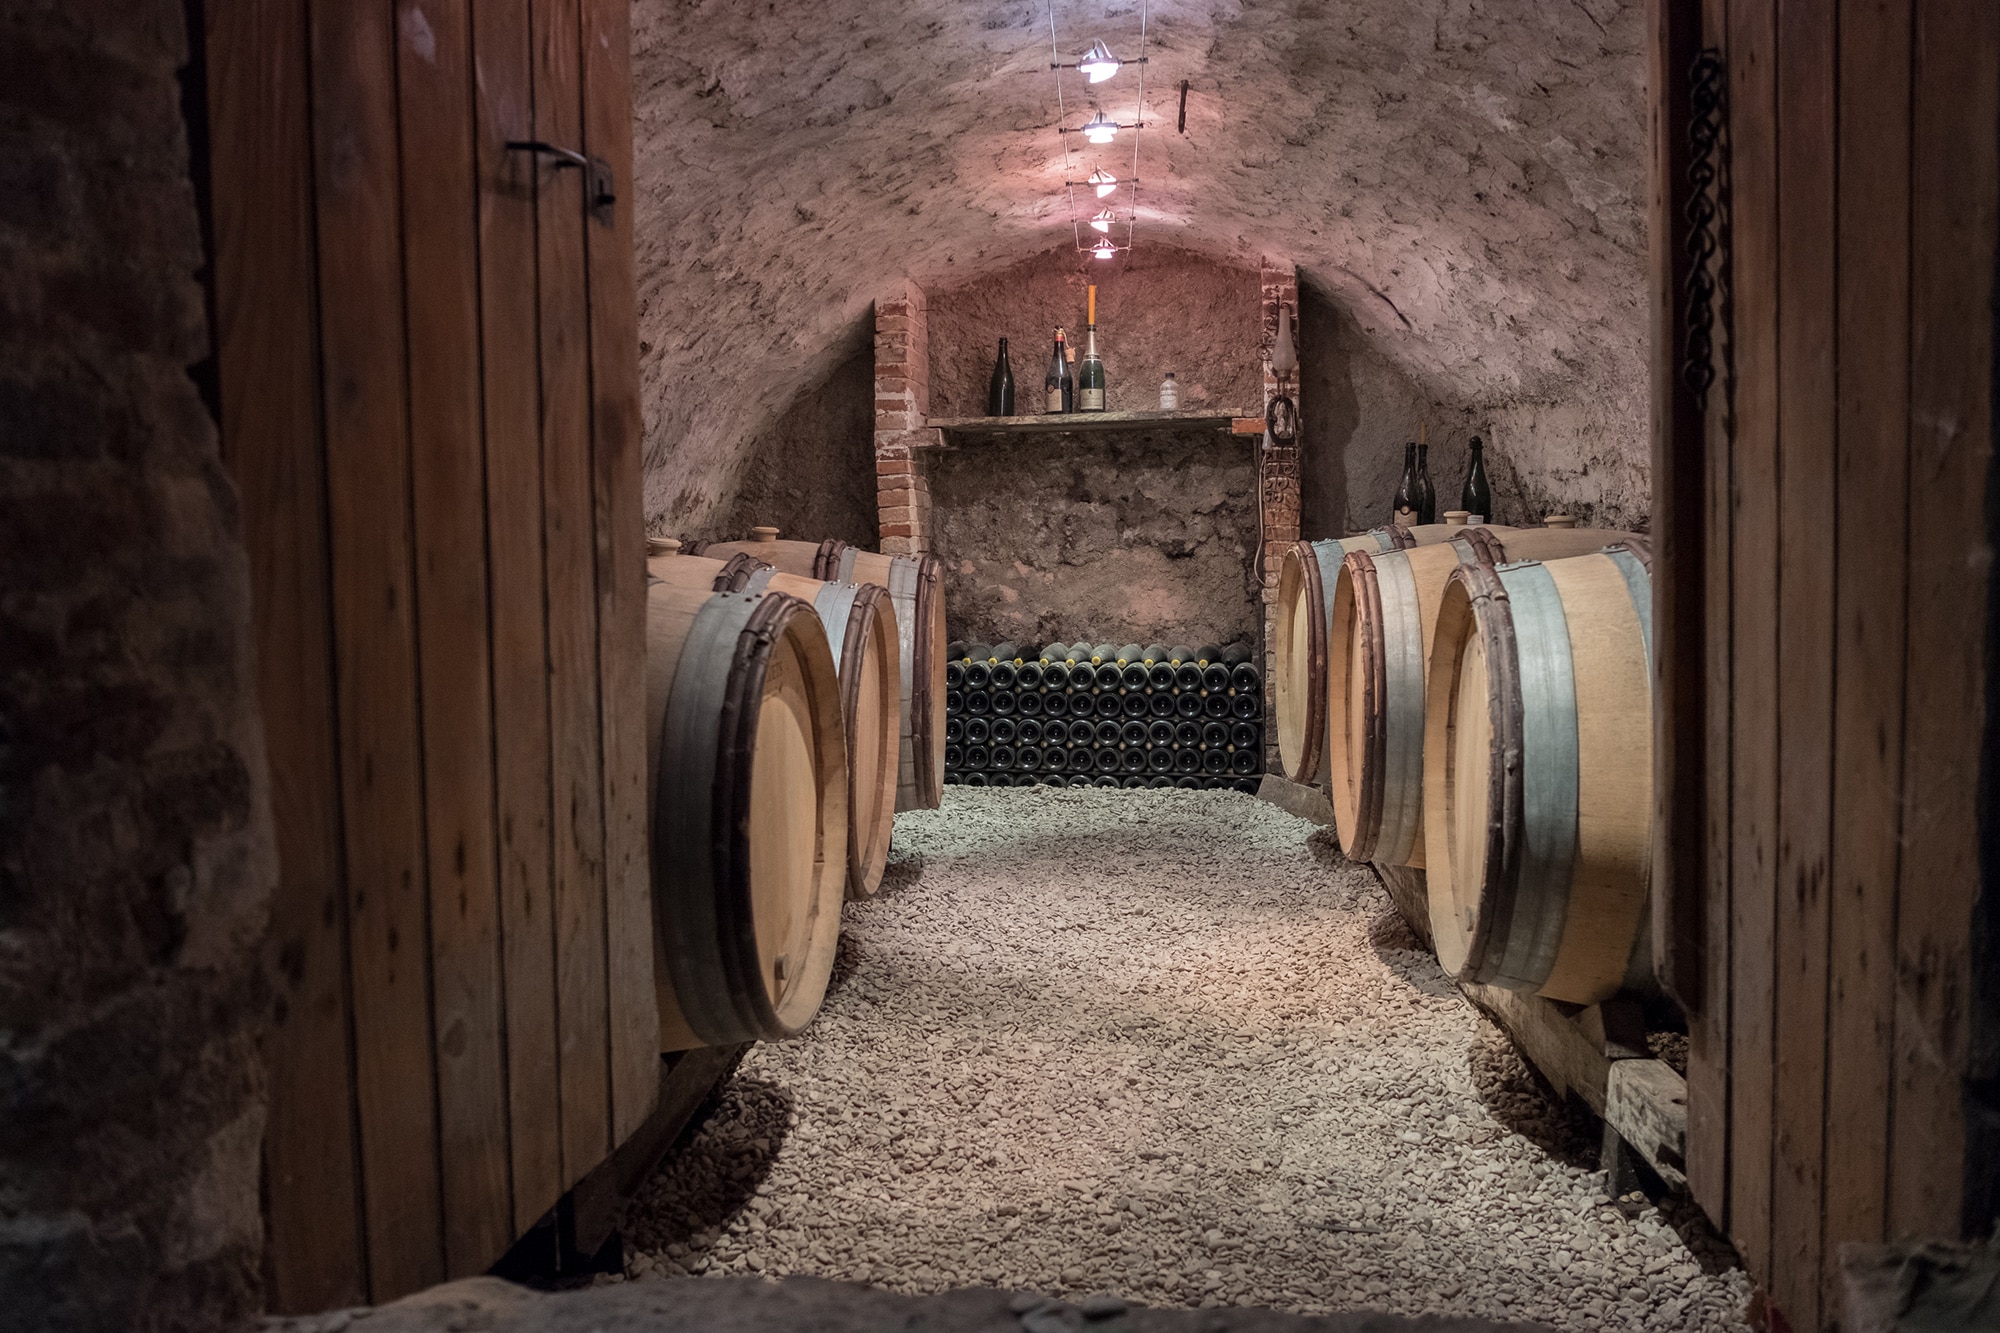 tonneaux dans les caves de champagne Desruets - Epernay tourisme